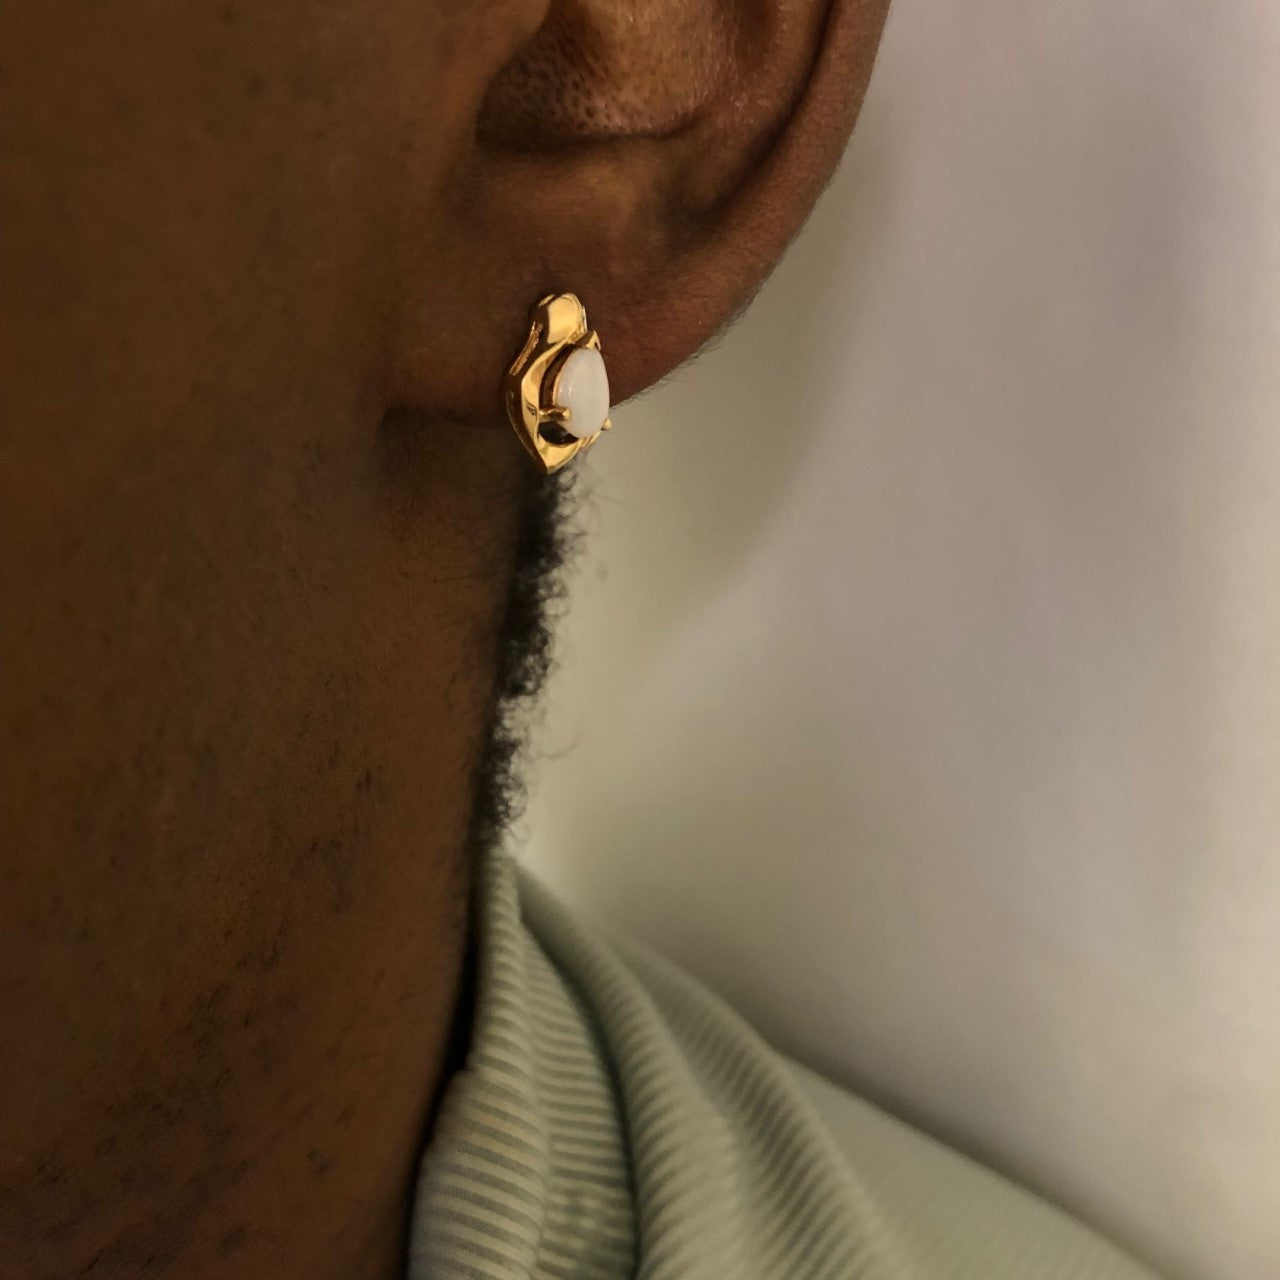 Opal & Diamond Stud Earrings | 0.44ctw, 0.02ctw |